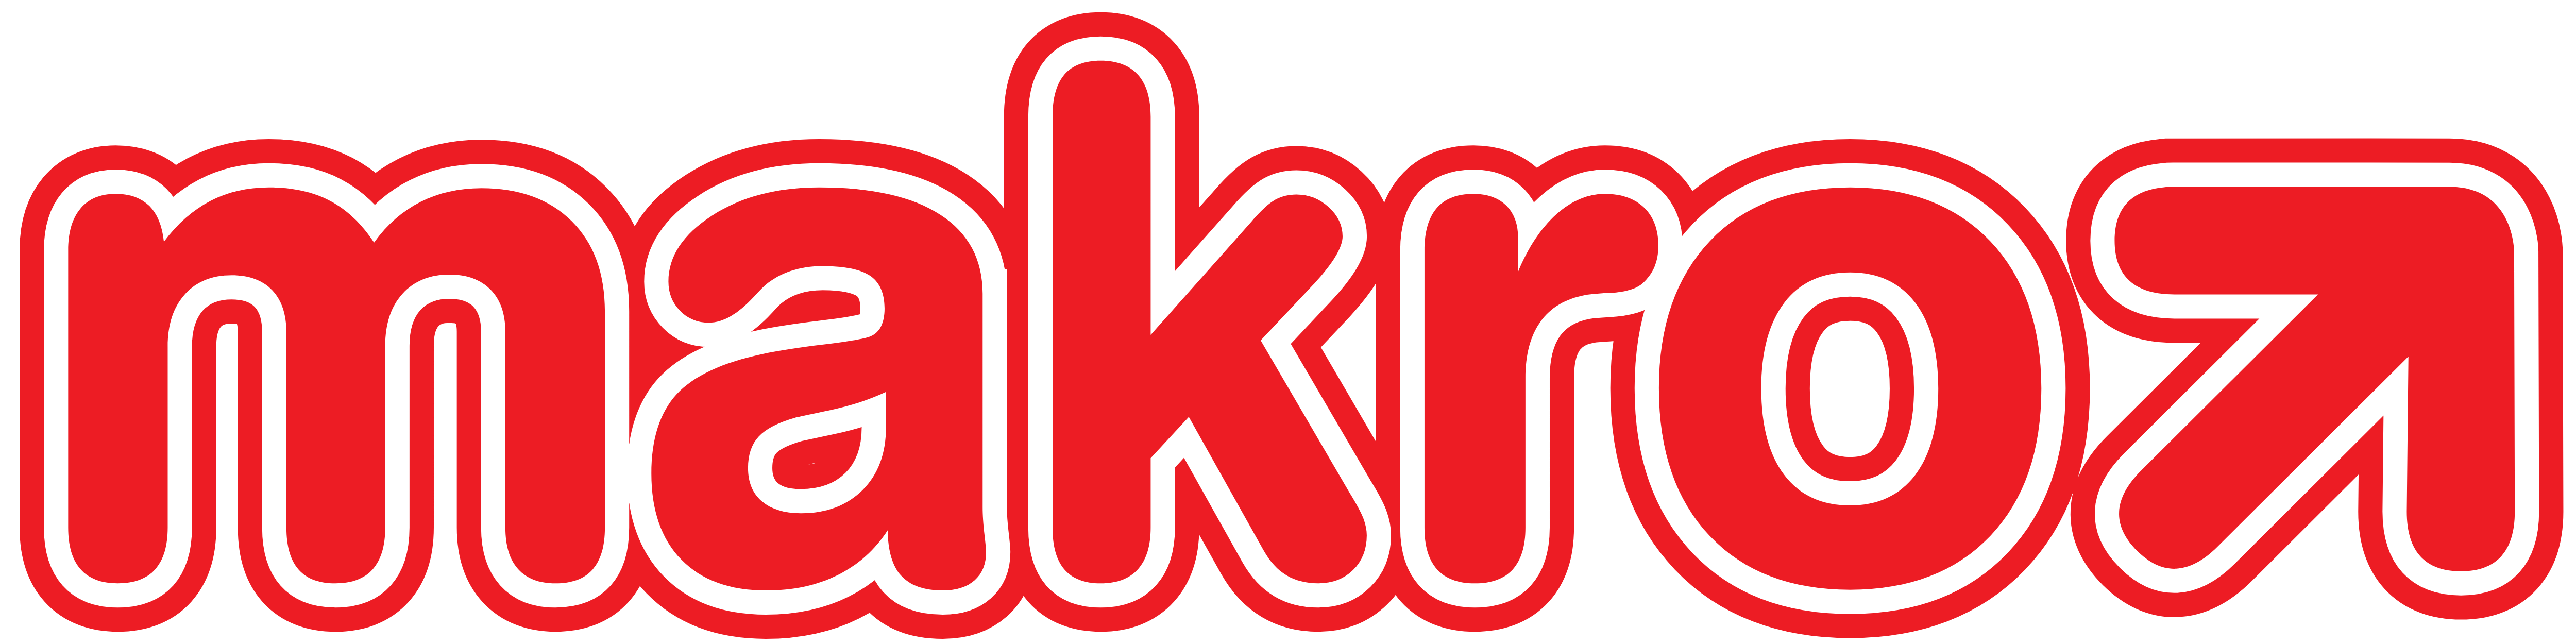 Makro_logo